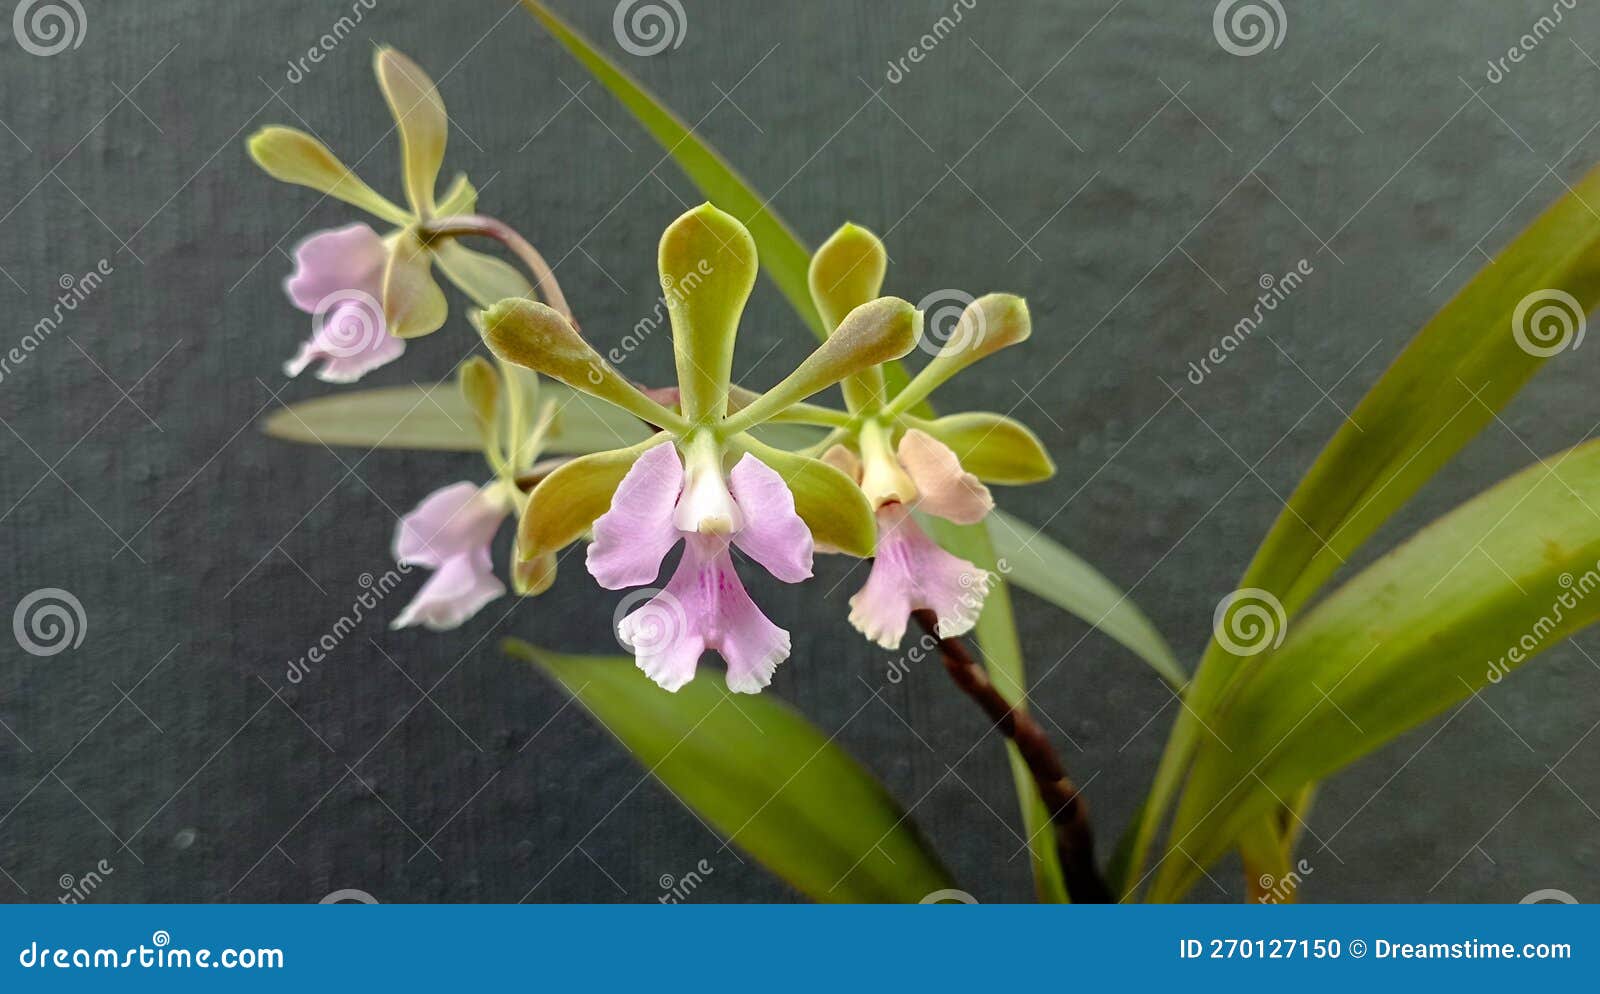 encyclia diurna very fragrant flower orchids